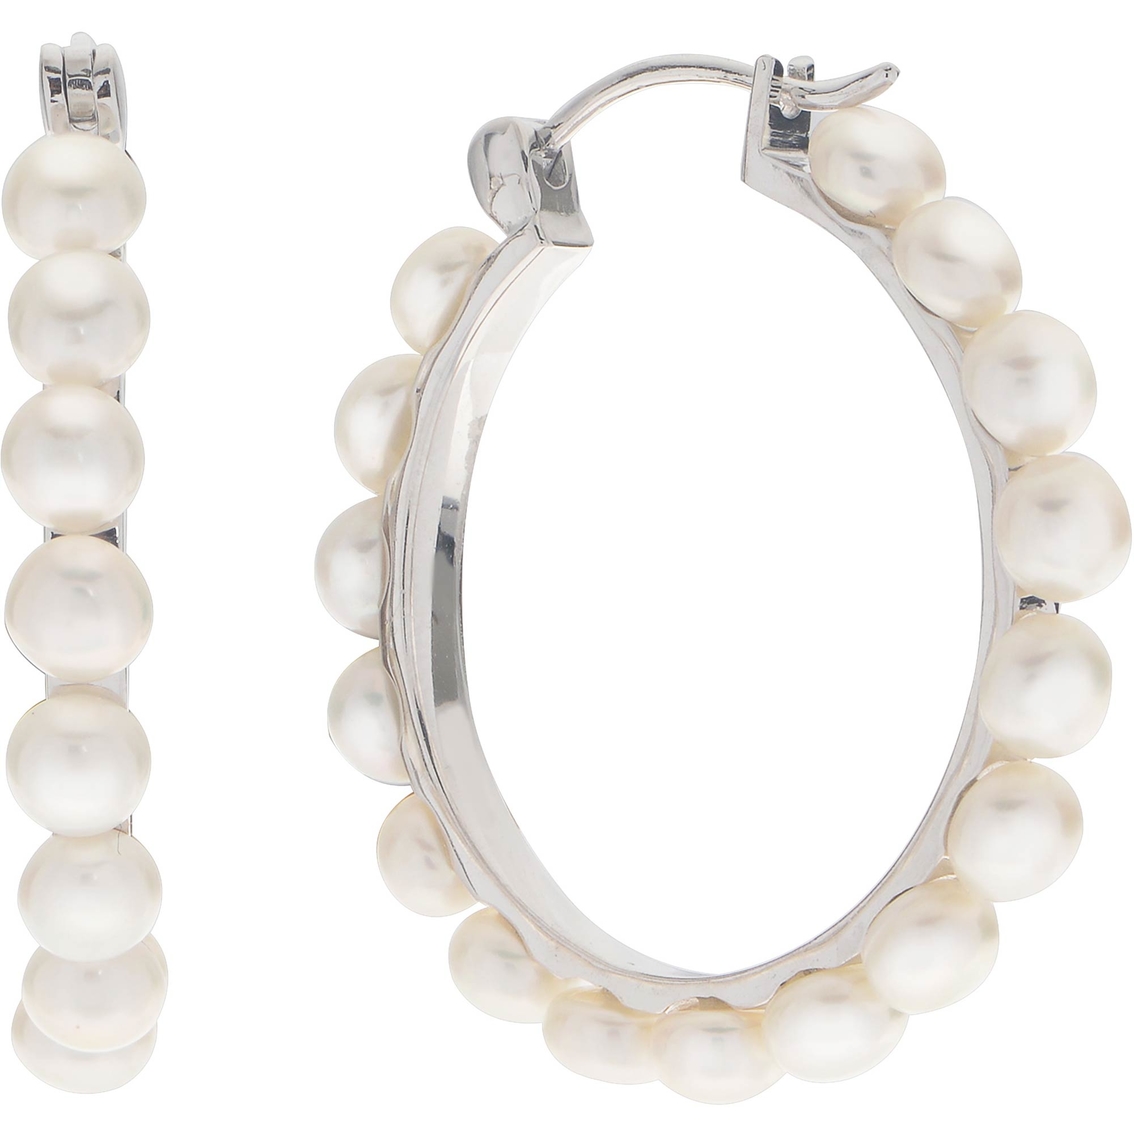 Imperial Sterling Silver Cultured Pearl Hoop Earrings | Gemstone ...